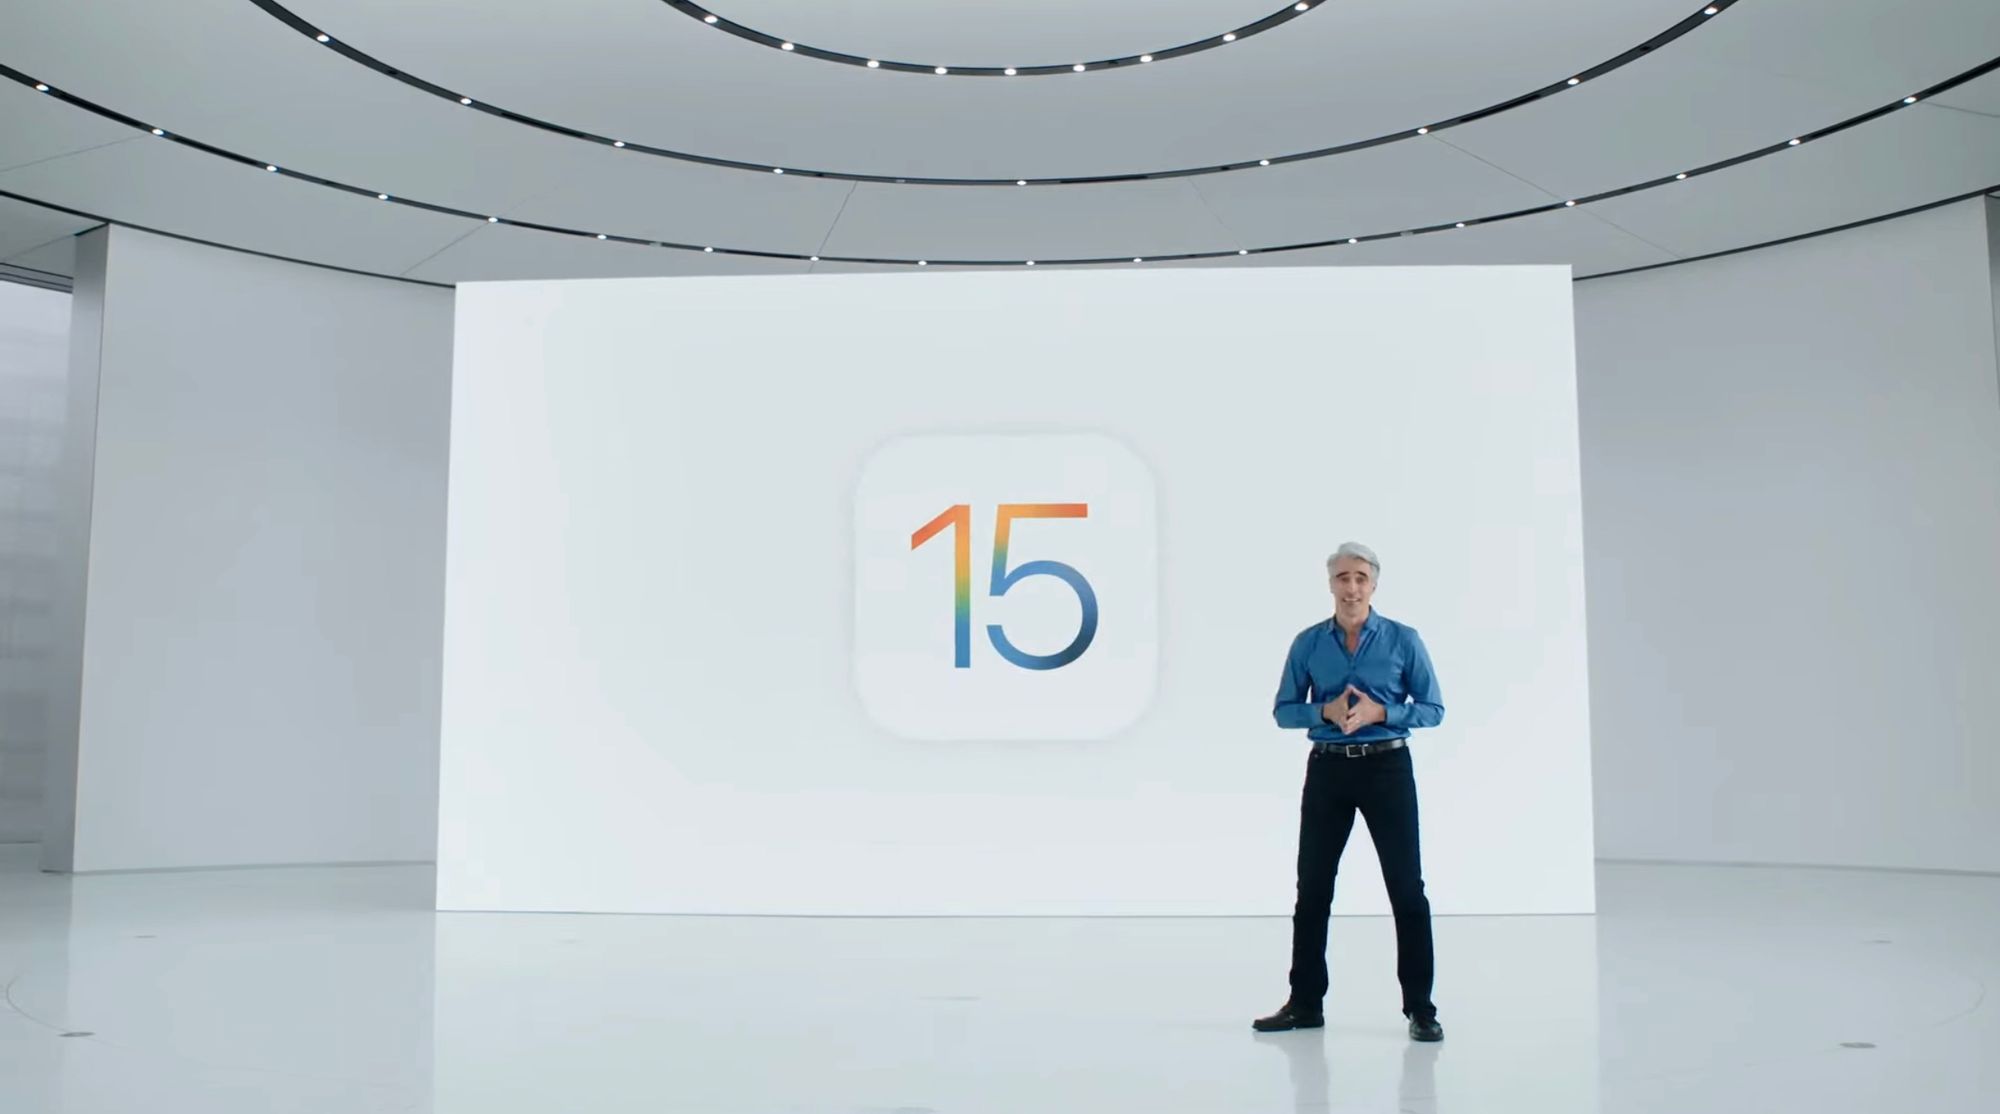 É hoje! Descobre a hora de lançamento do iOS 15 em Portugal